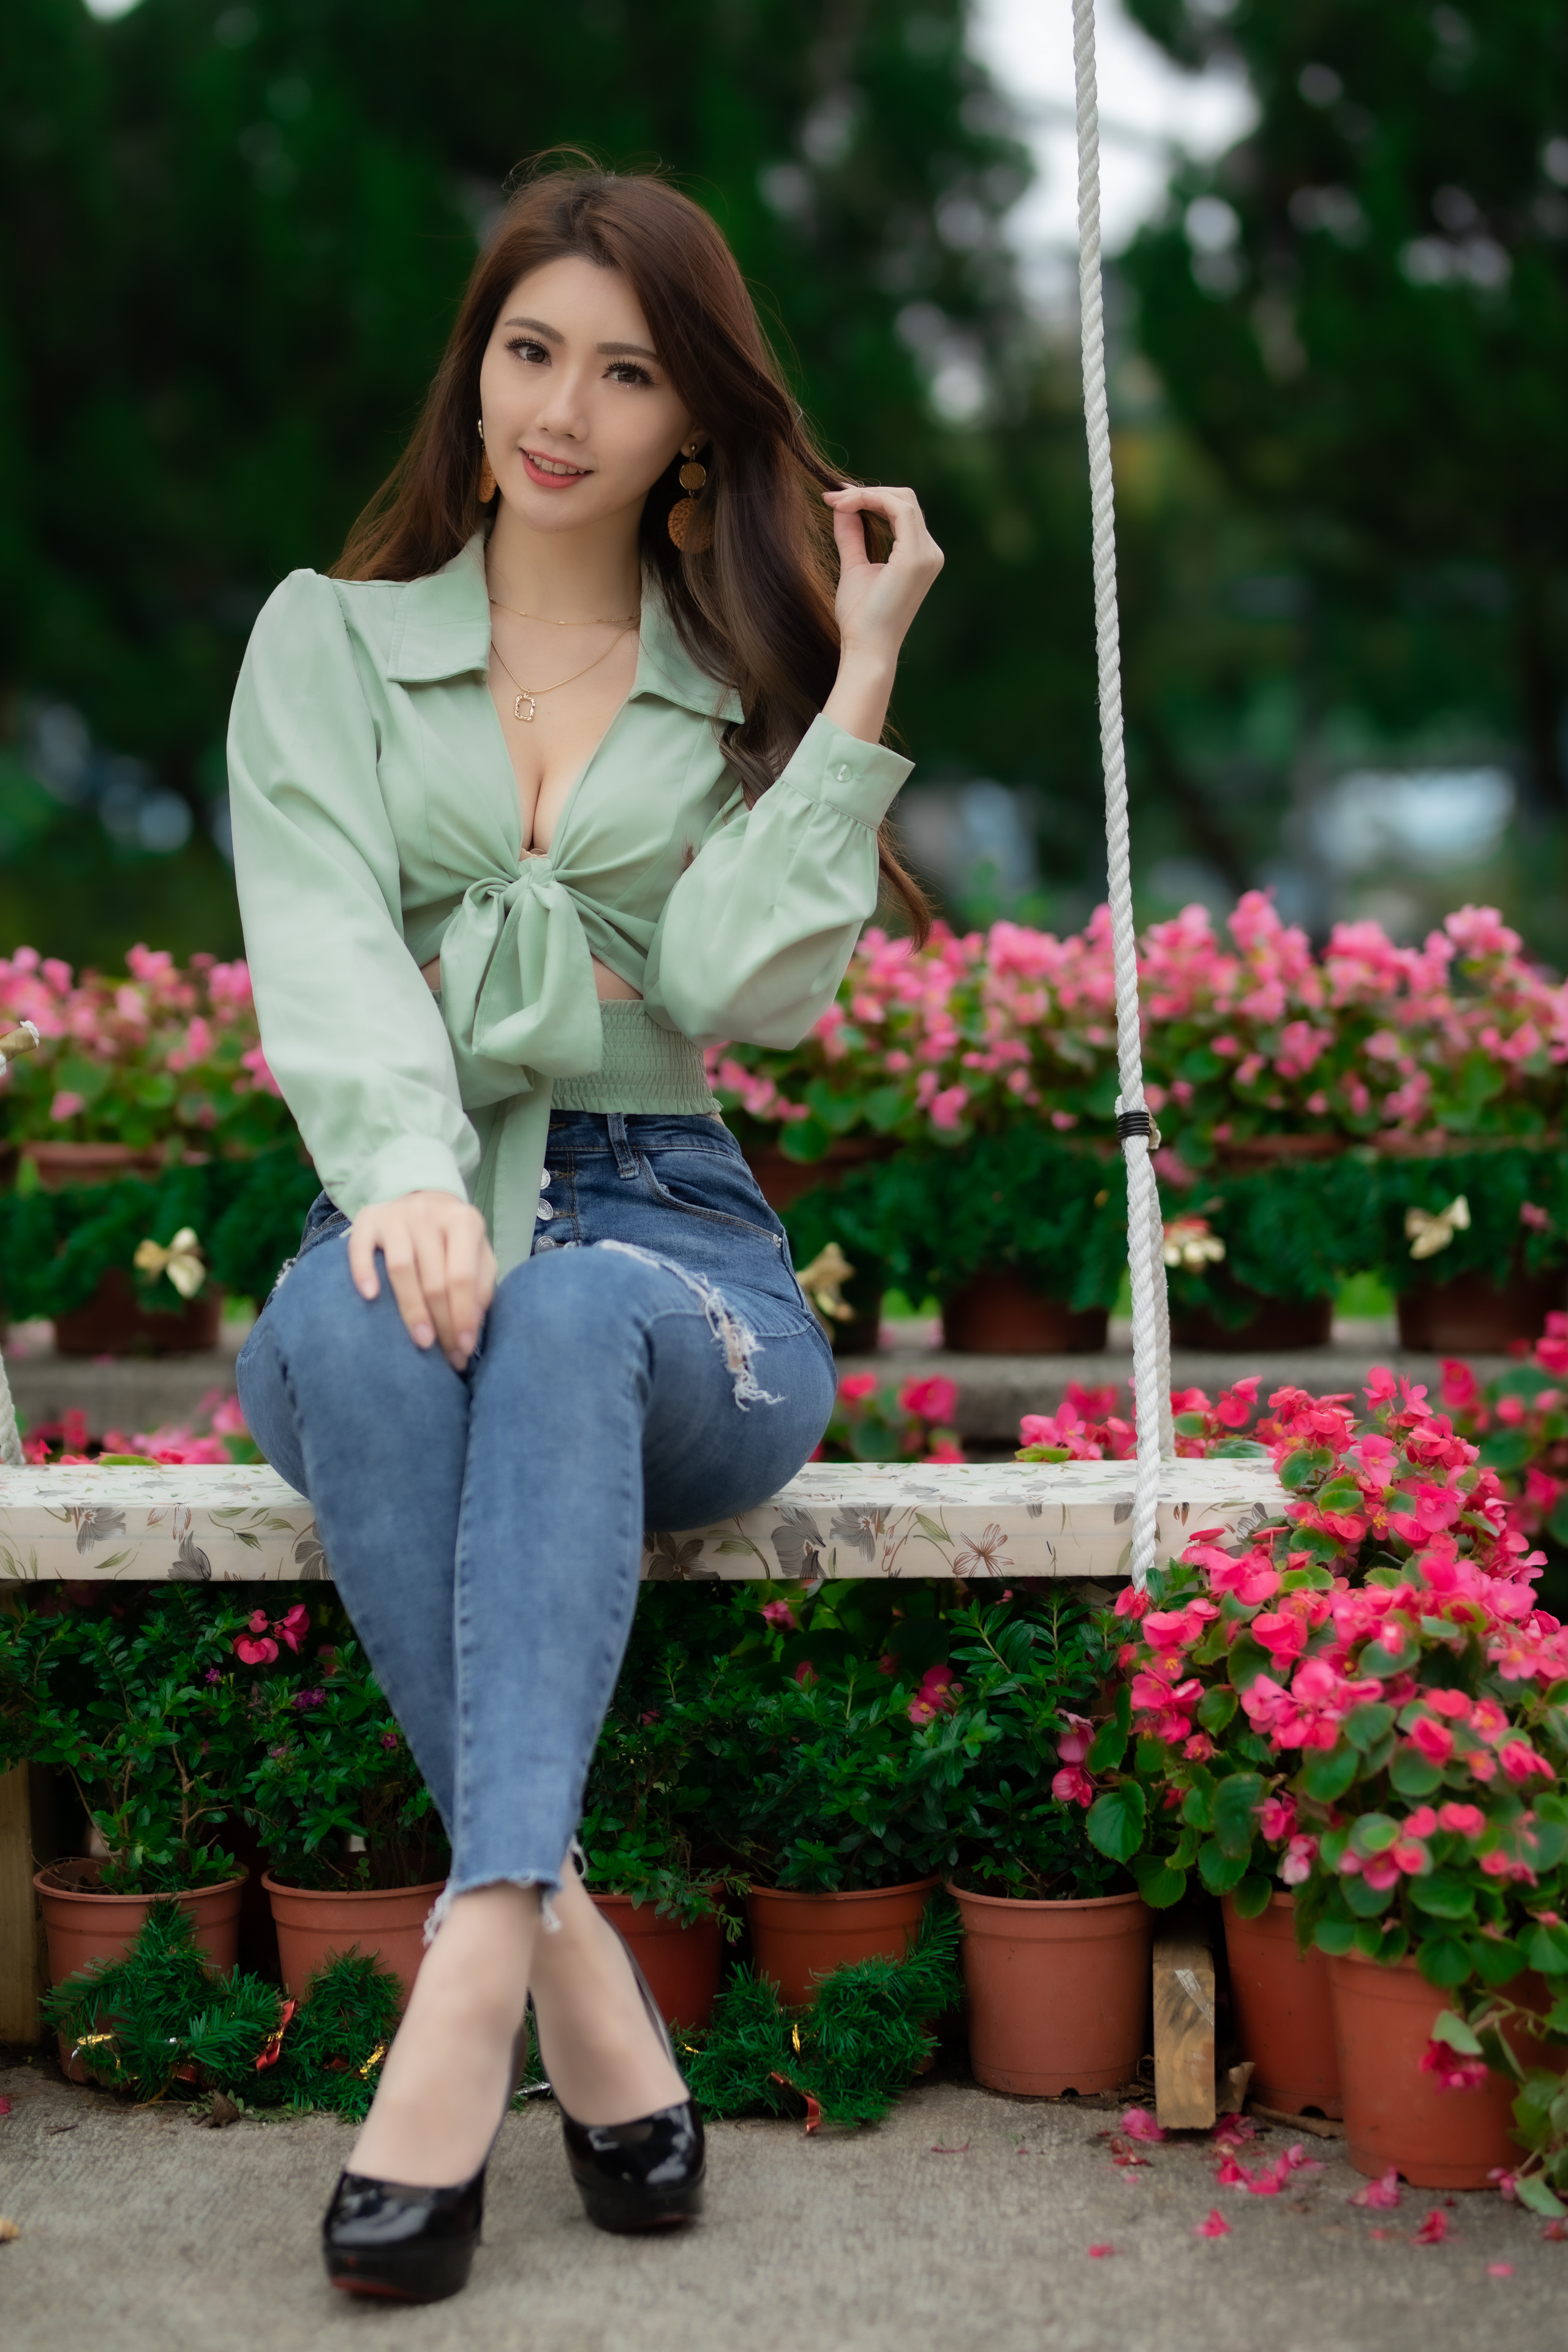 Asian Model Women Long Hair Dark Hair Depth Of Field Jeans Sitting Swing Blouse Black Heels Flowerpo 2560x3840